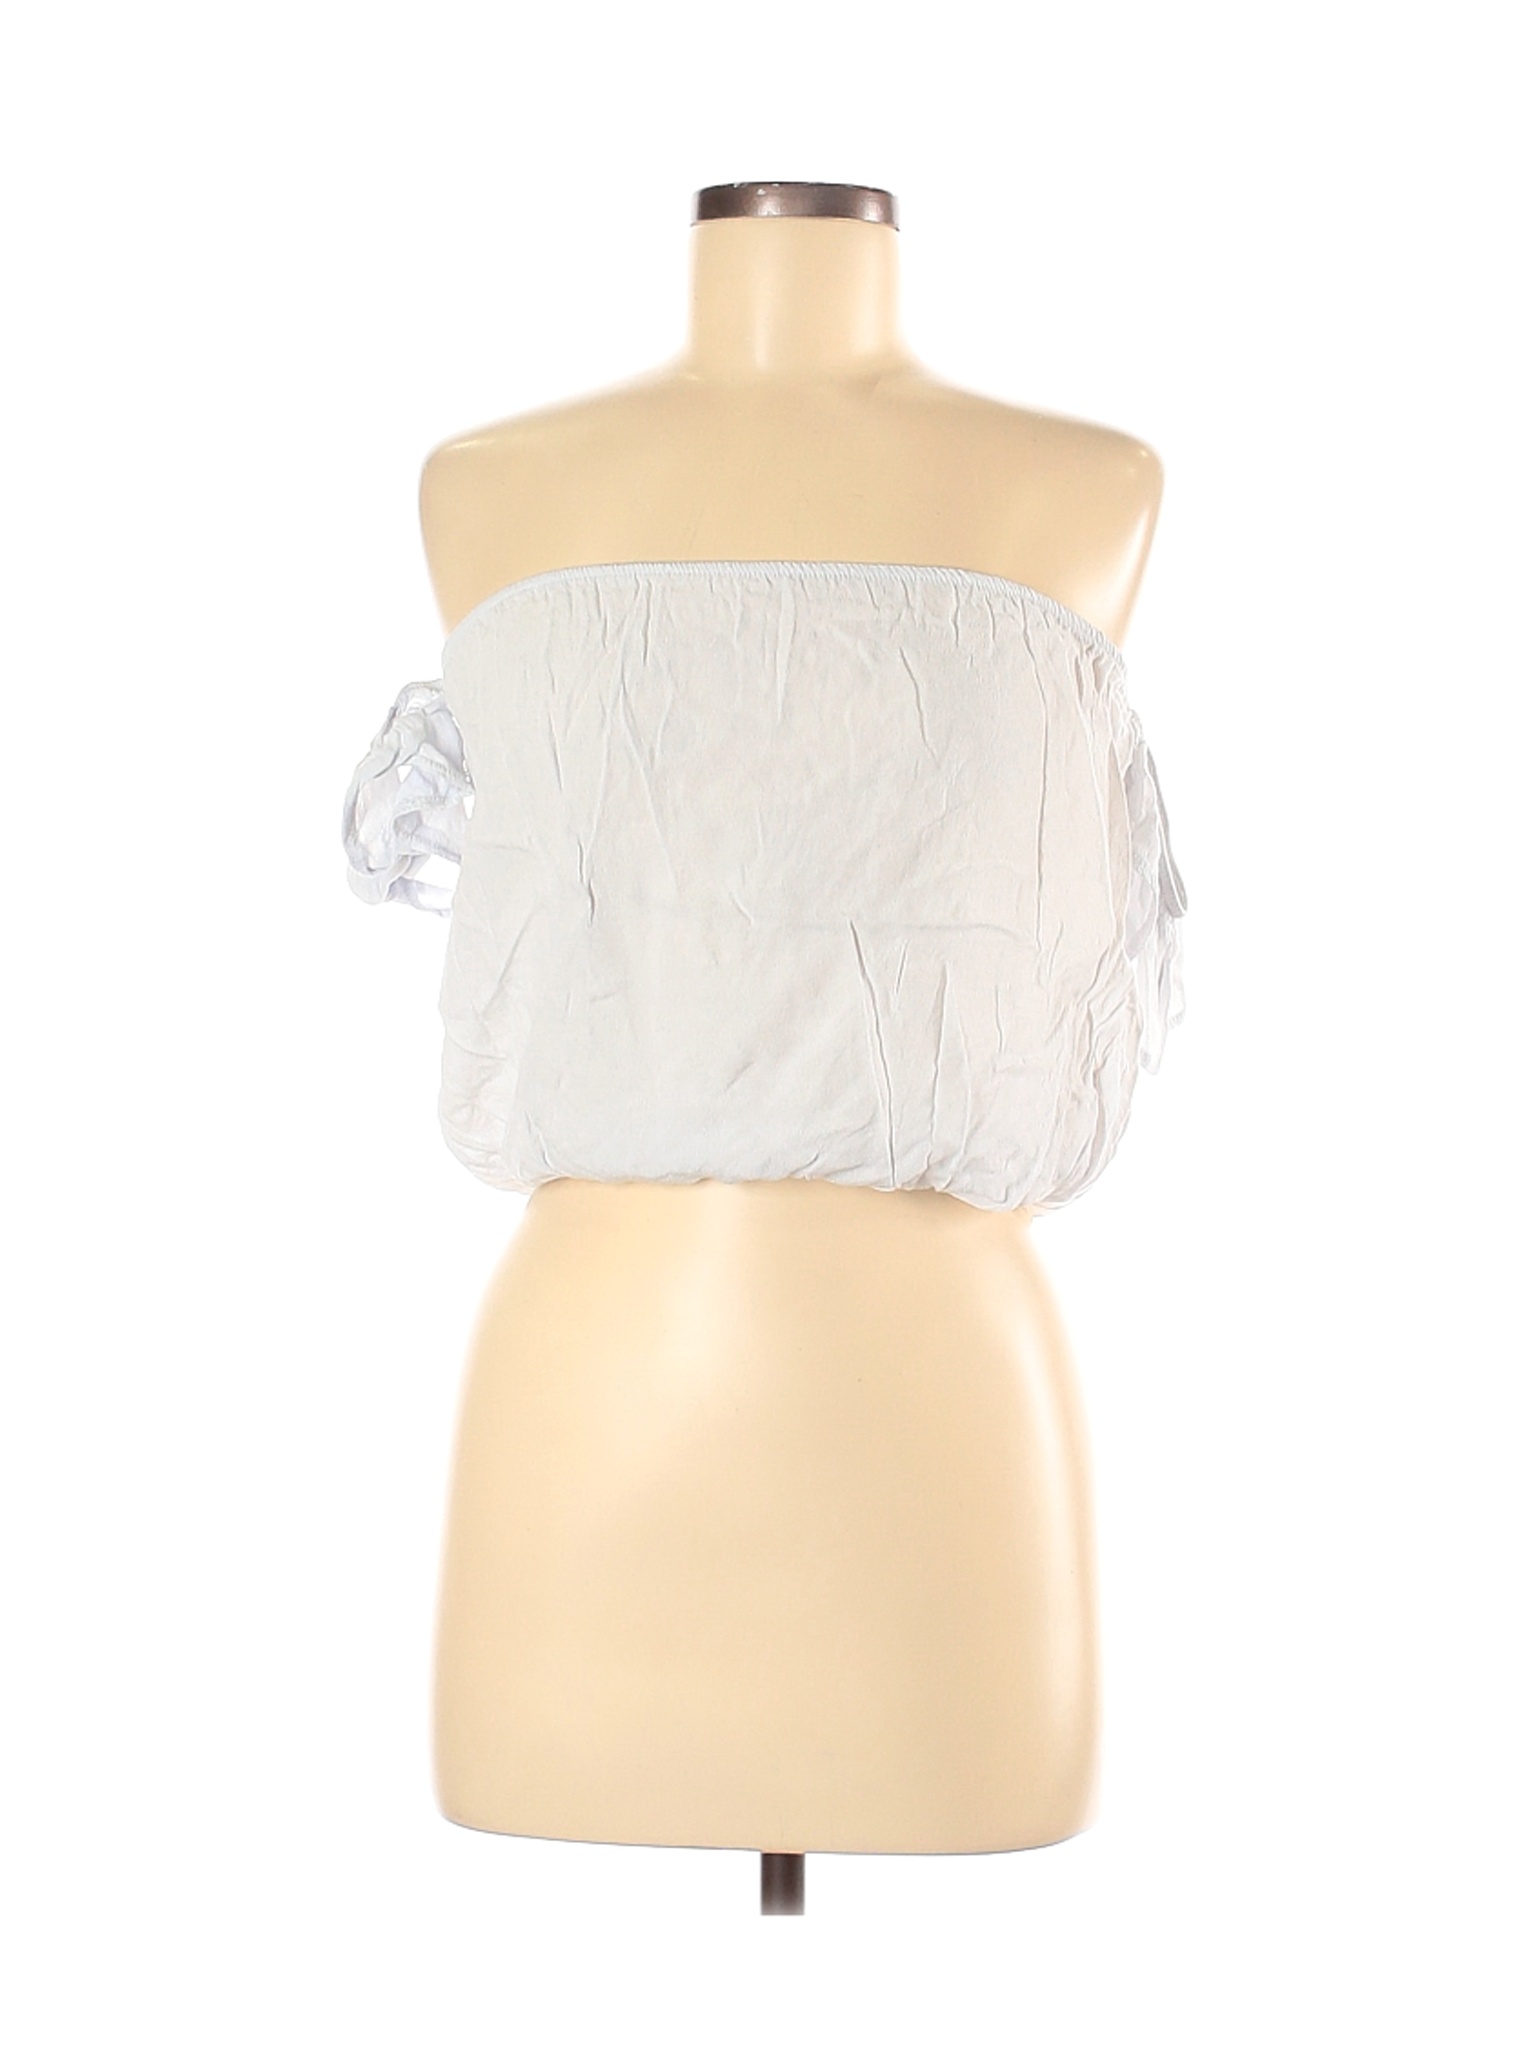 Brandy Melville Women White Short Sleeve Blouse One Size | eBay